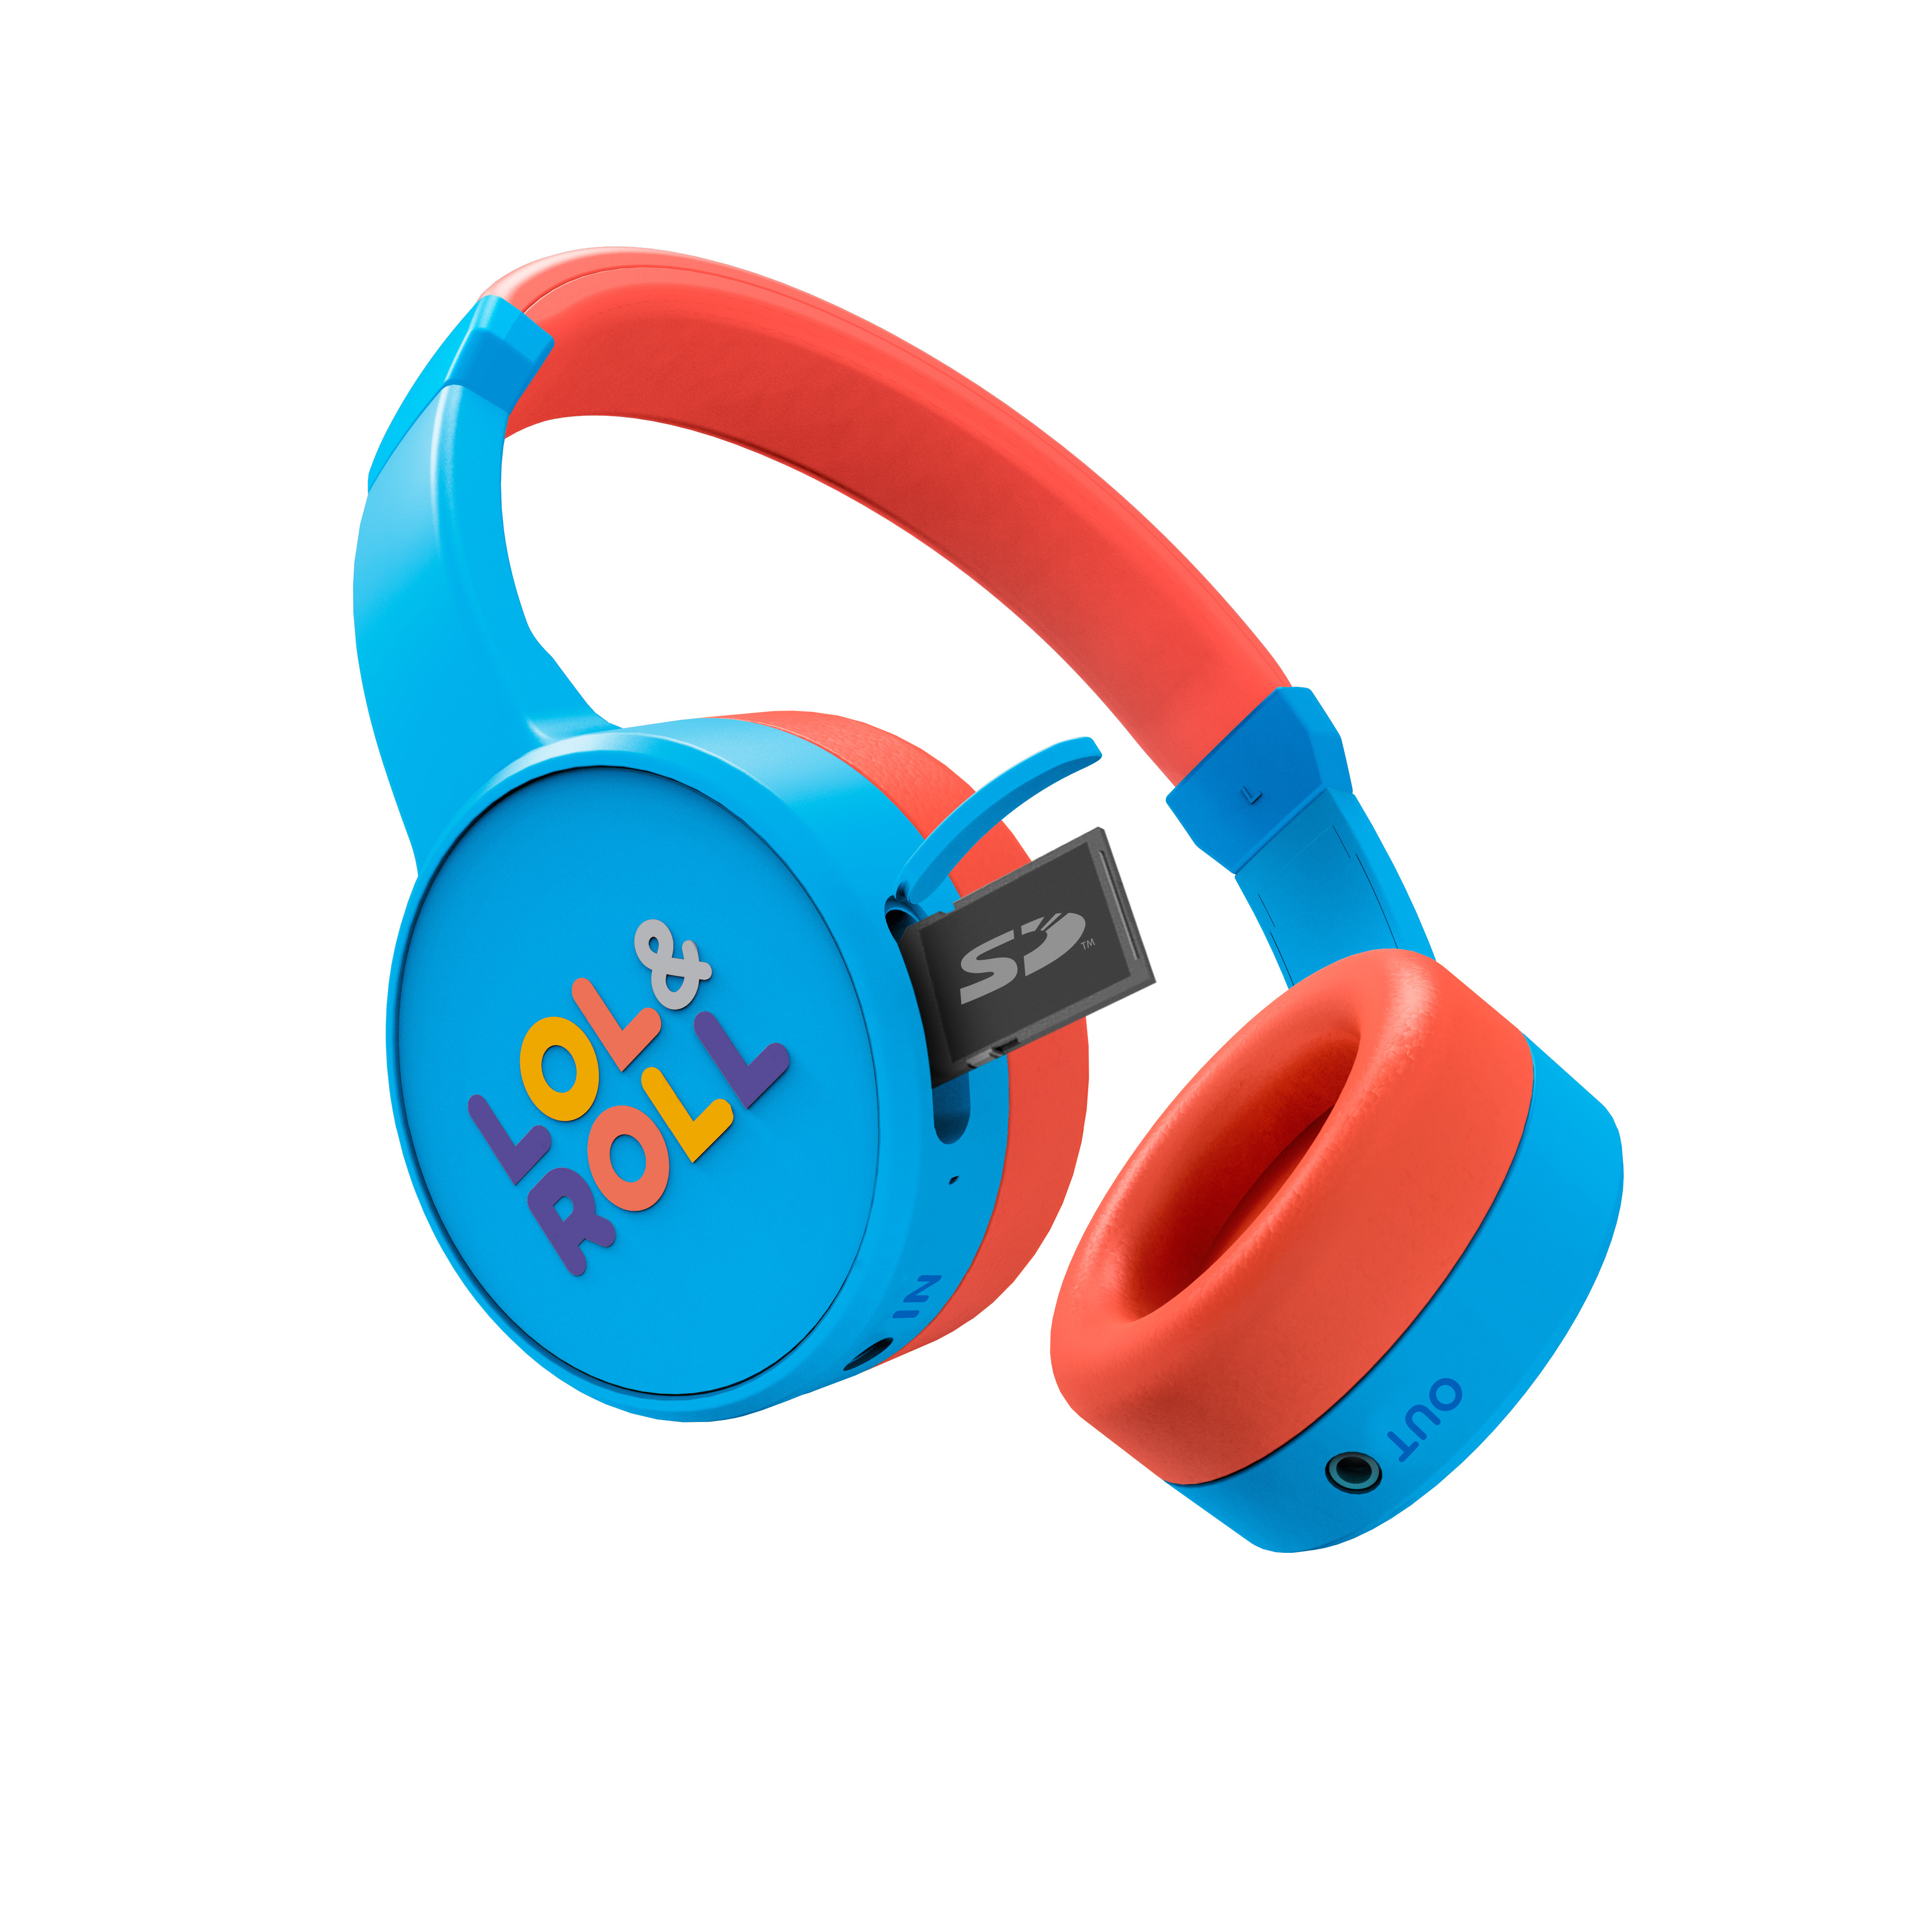 Auriculares Bluetooth para niños para conectar al smartphone